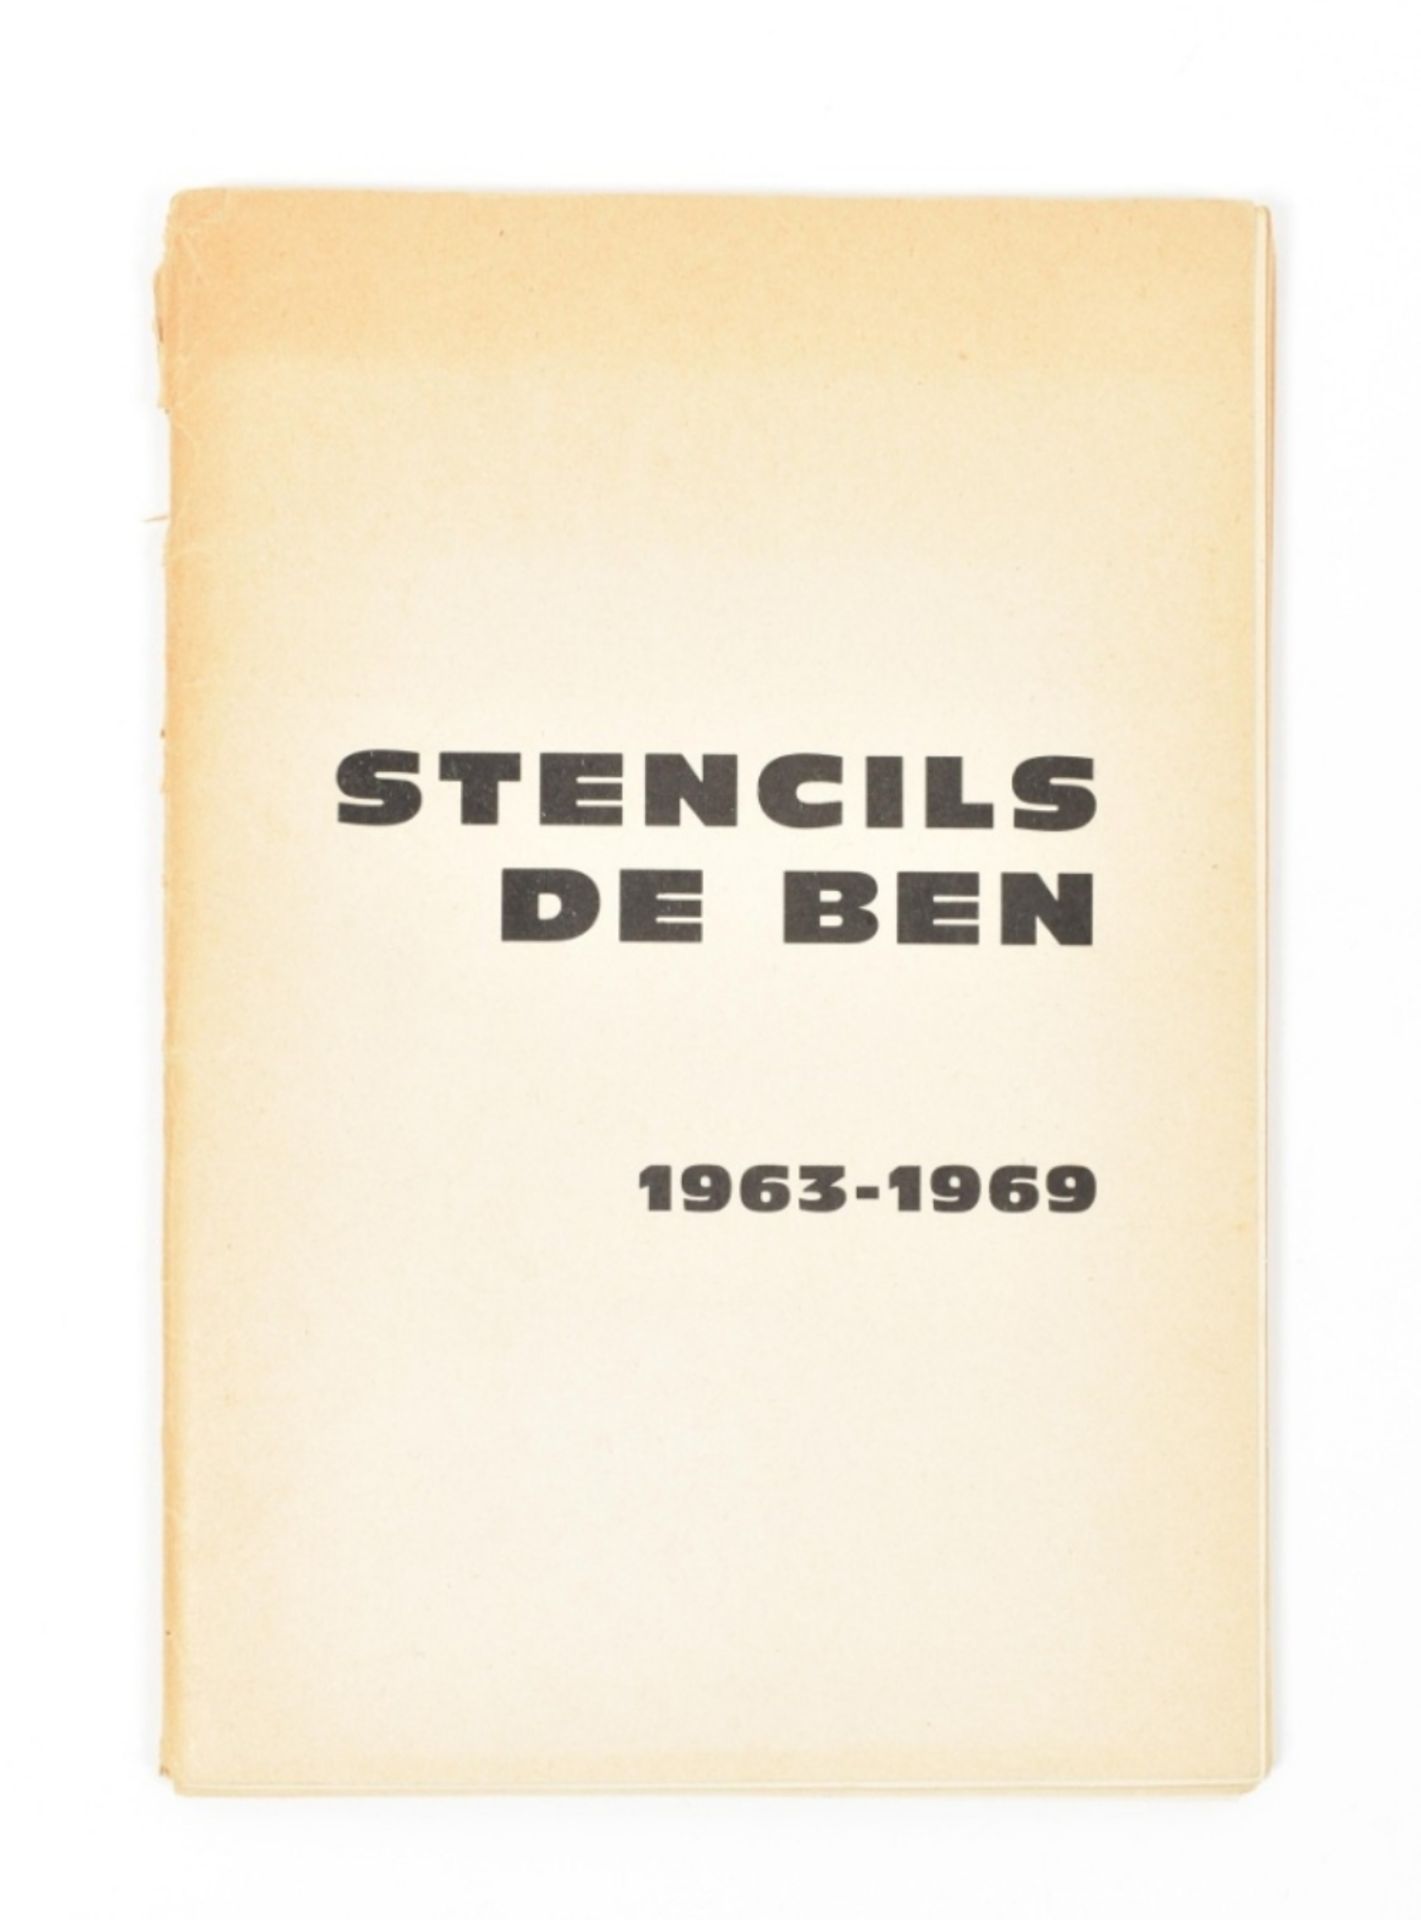 [Fluxus] Ben Vautier, Stencils de Ben 1963-1969